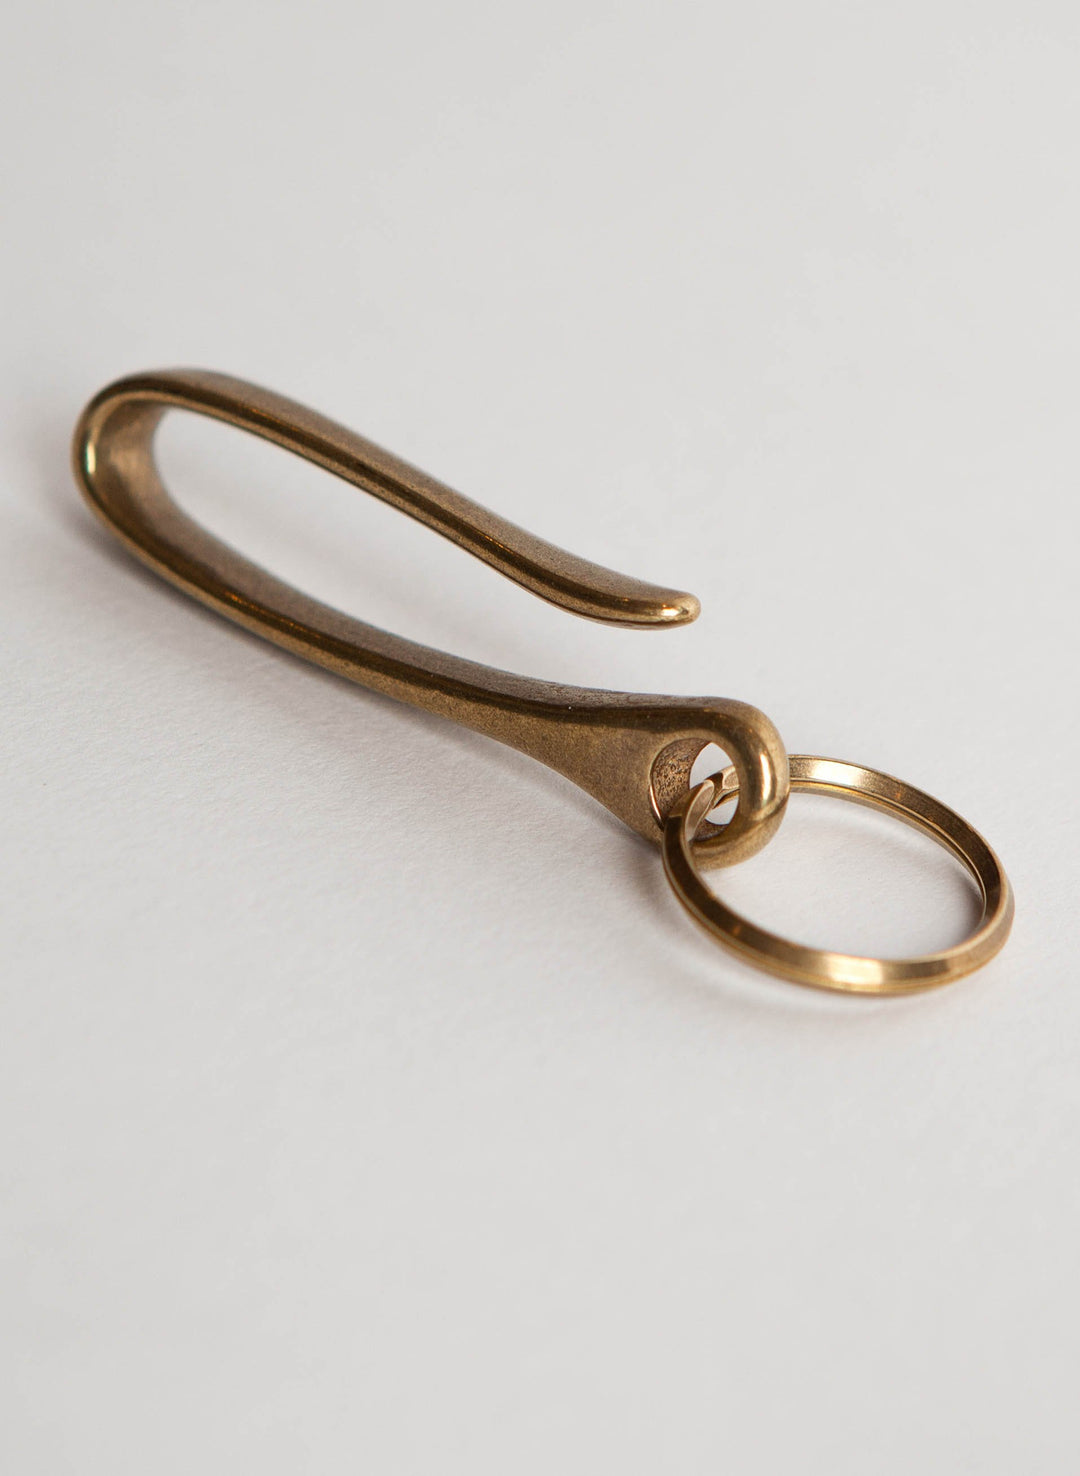 japanese brass key hook